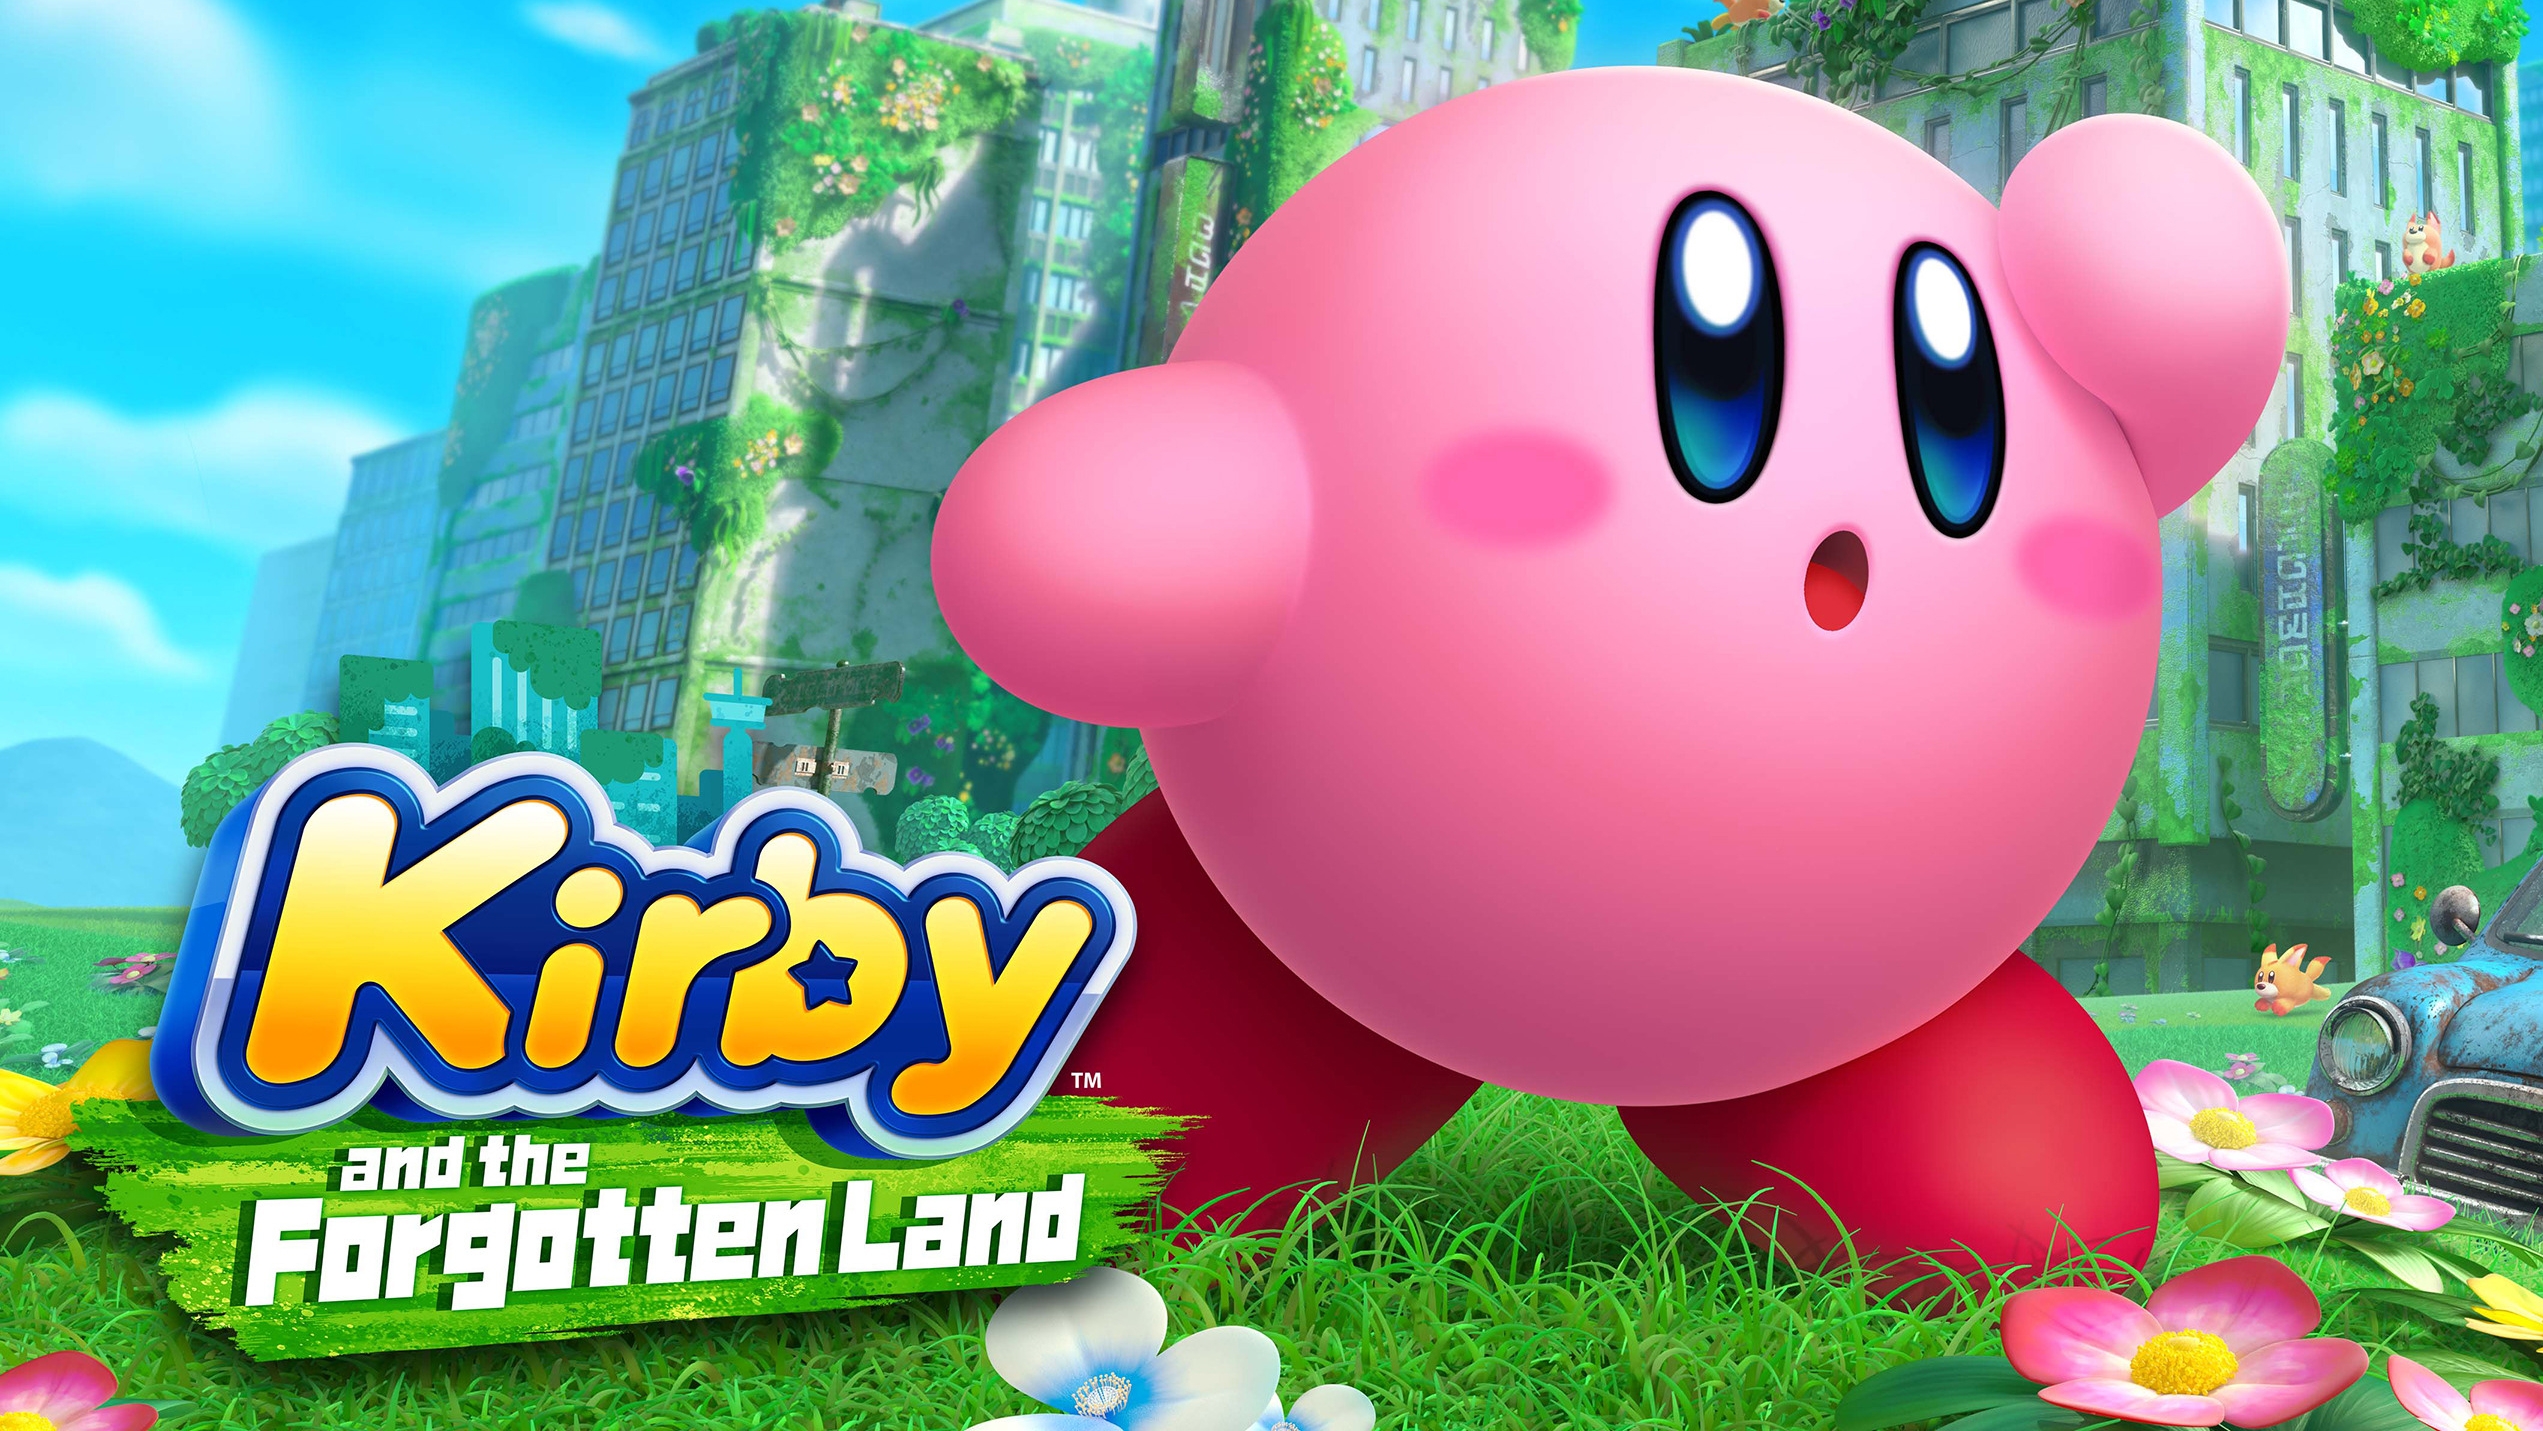 Switch Kaufe Land Vergessene das Kirby und Nintendo Eshop